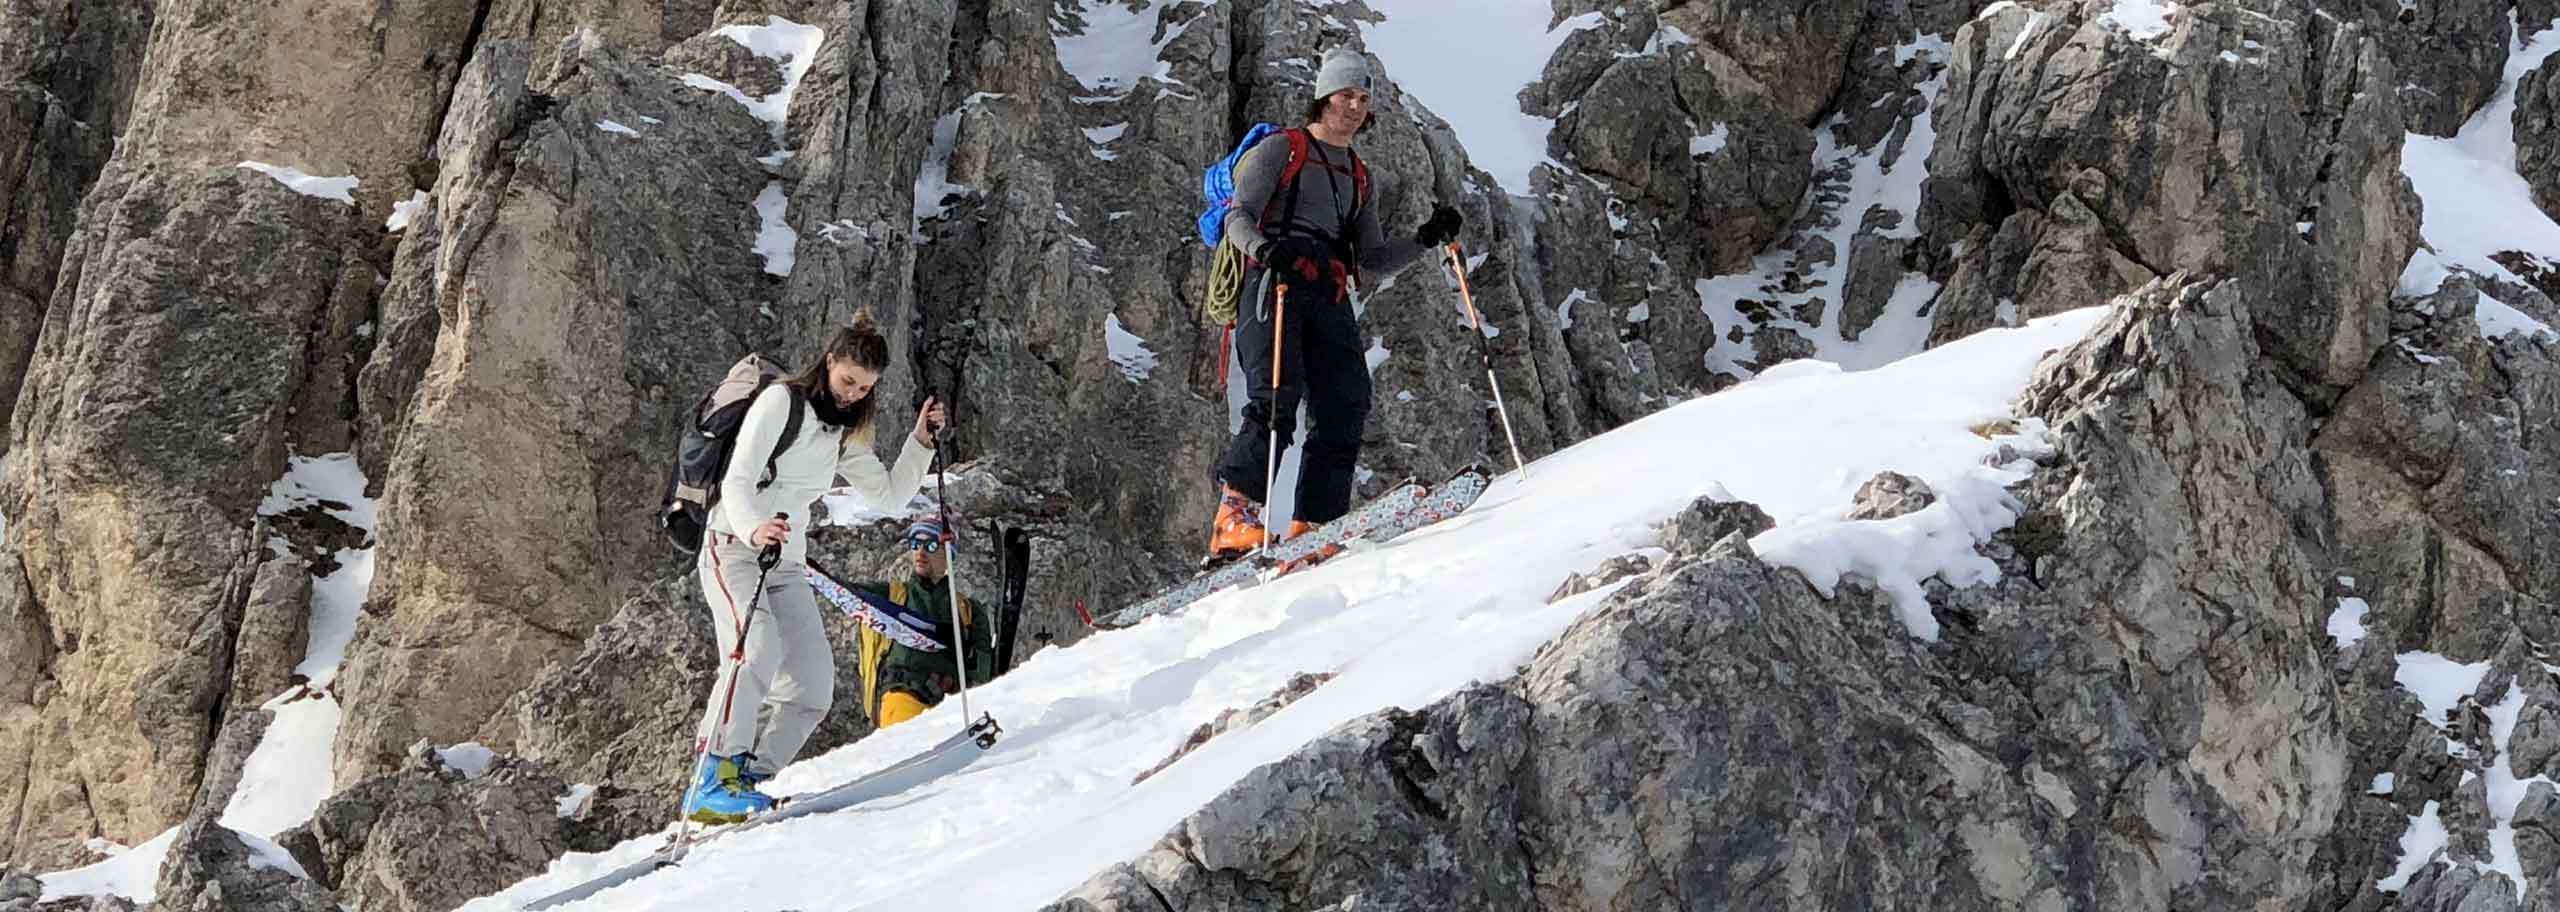 Sci Alpinismo ad Alleghe, Escursioni e Corsi Sci Alpinistici